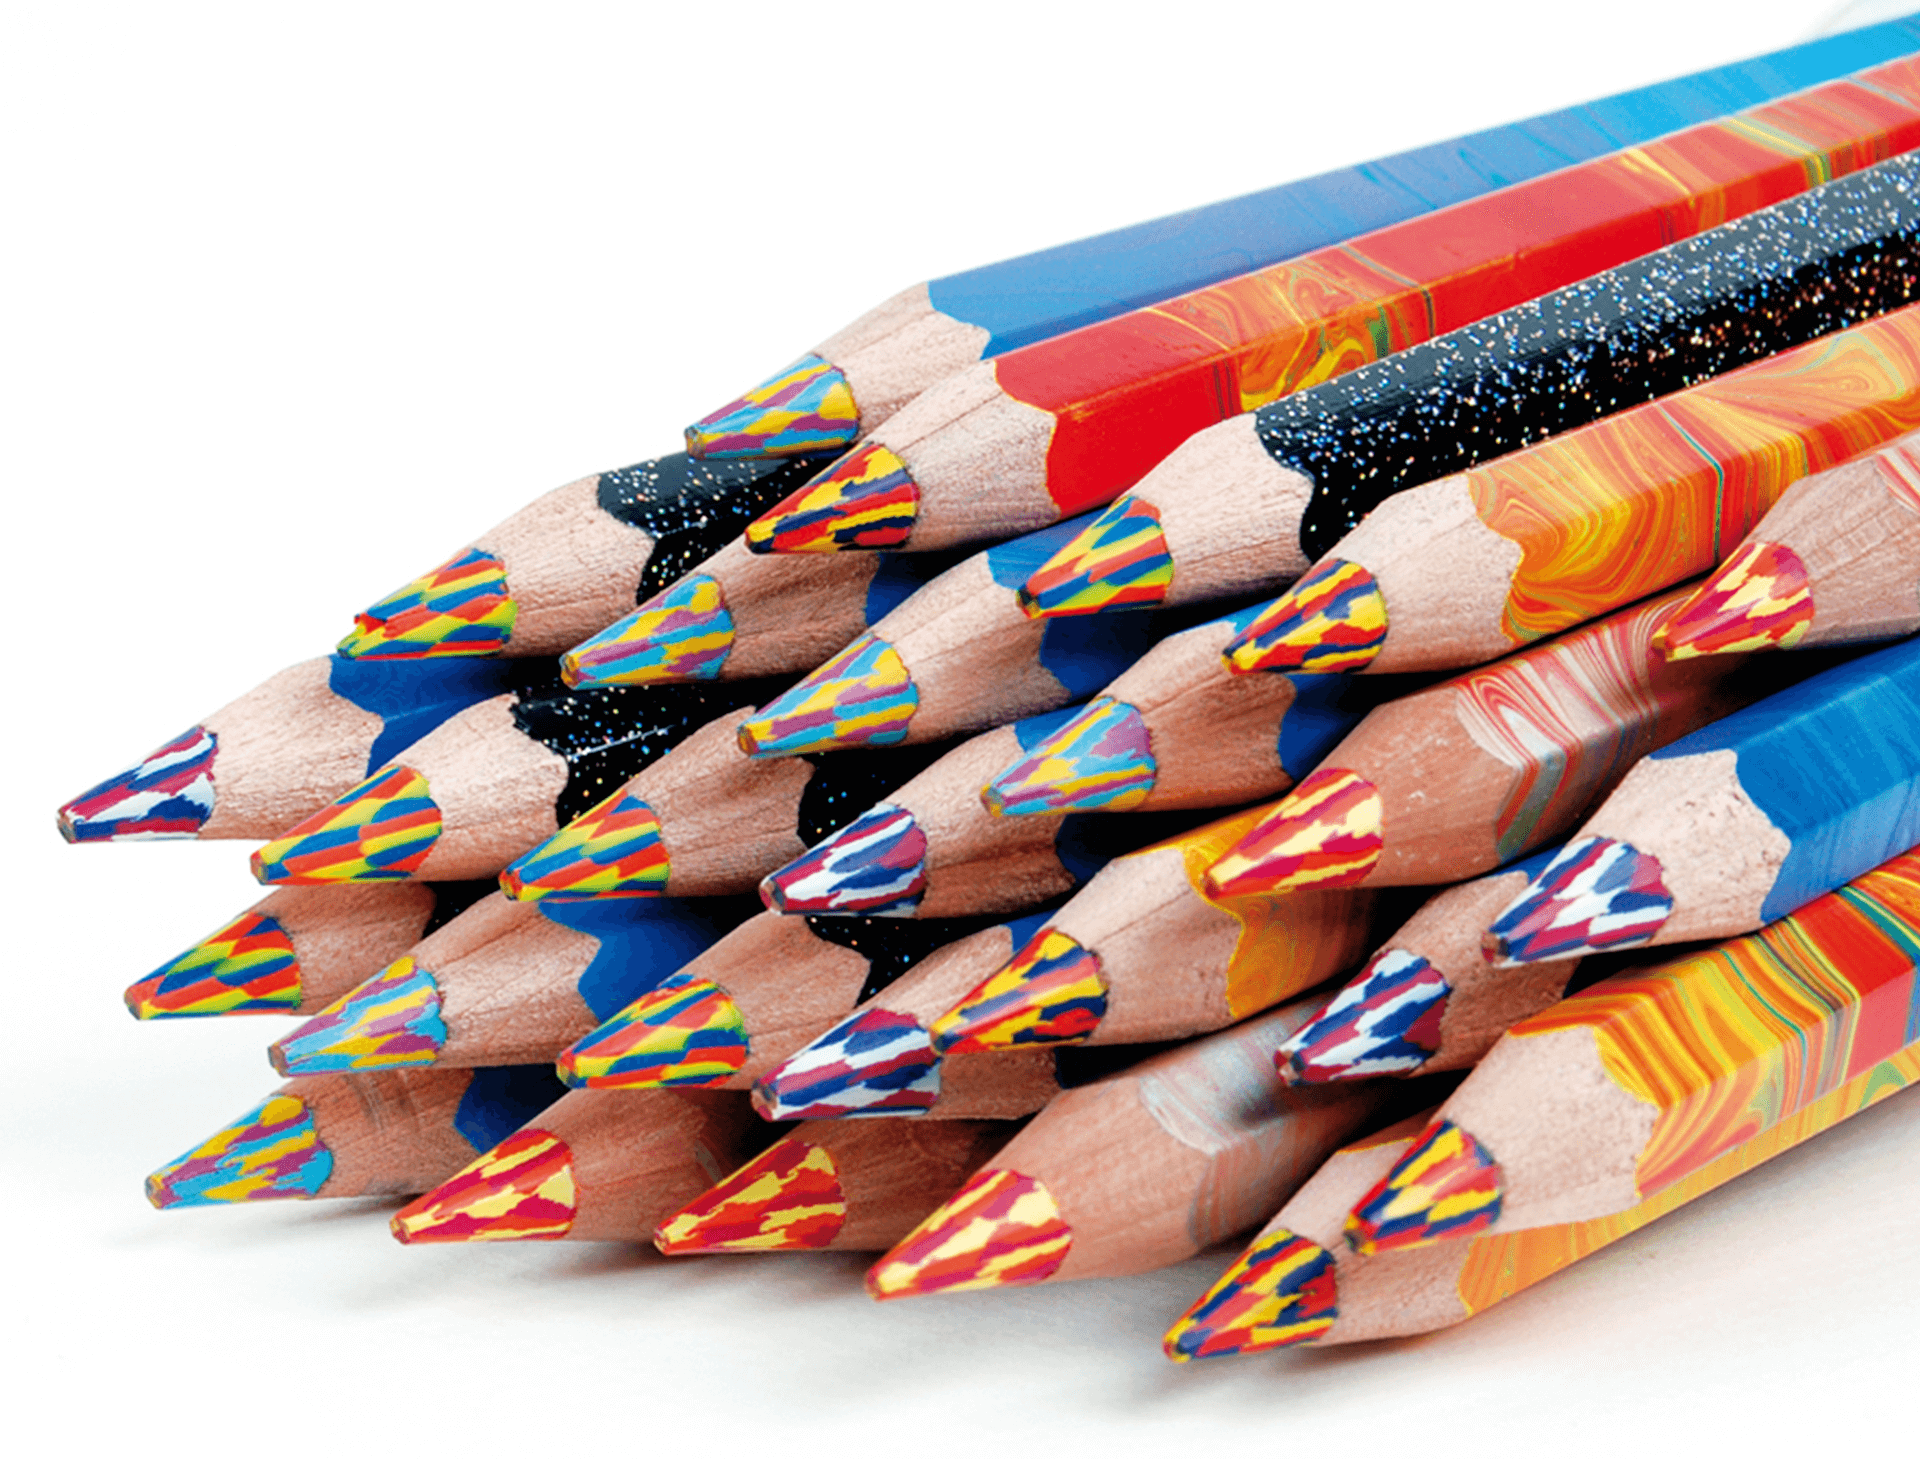 Magic pencil. Magic карандаши многоцветные Koh-i-Noor. Набор карандашей с многоцветным грифелем Koh-i-Noor Magic 3408. Разноцветный карандаш Koh-i-Noor. Карандаши цветные Koh-i-Noor Jumbo.